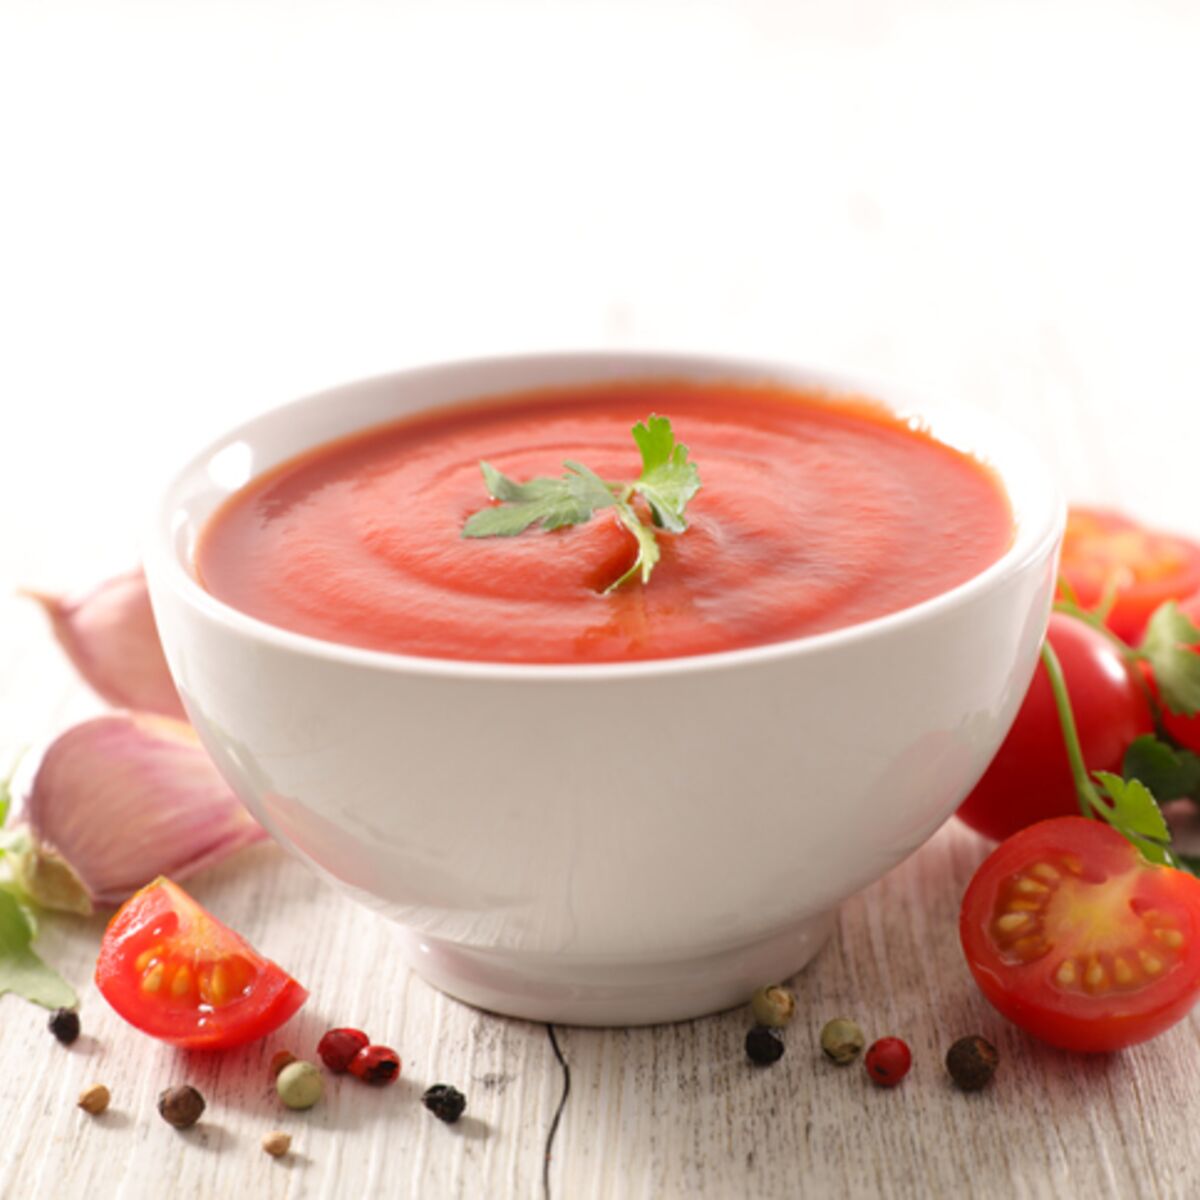 Recette de soupe à la tomate facile et rapide - Blog Cuisine Saine